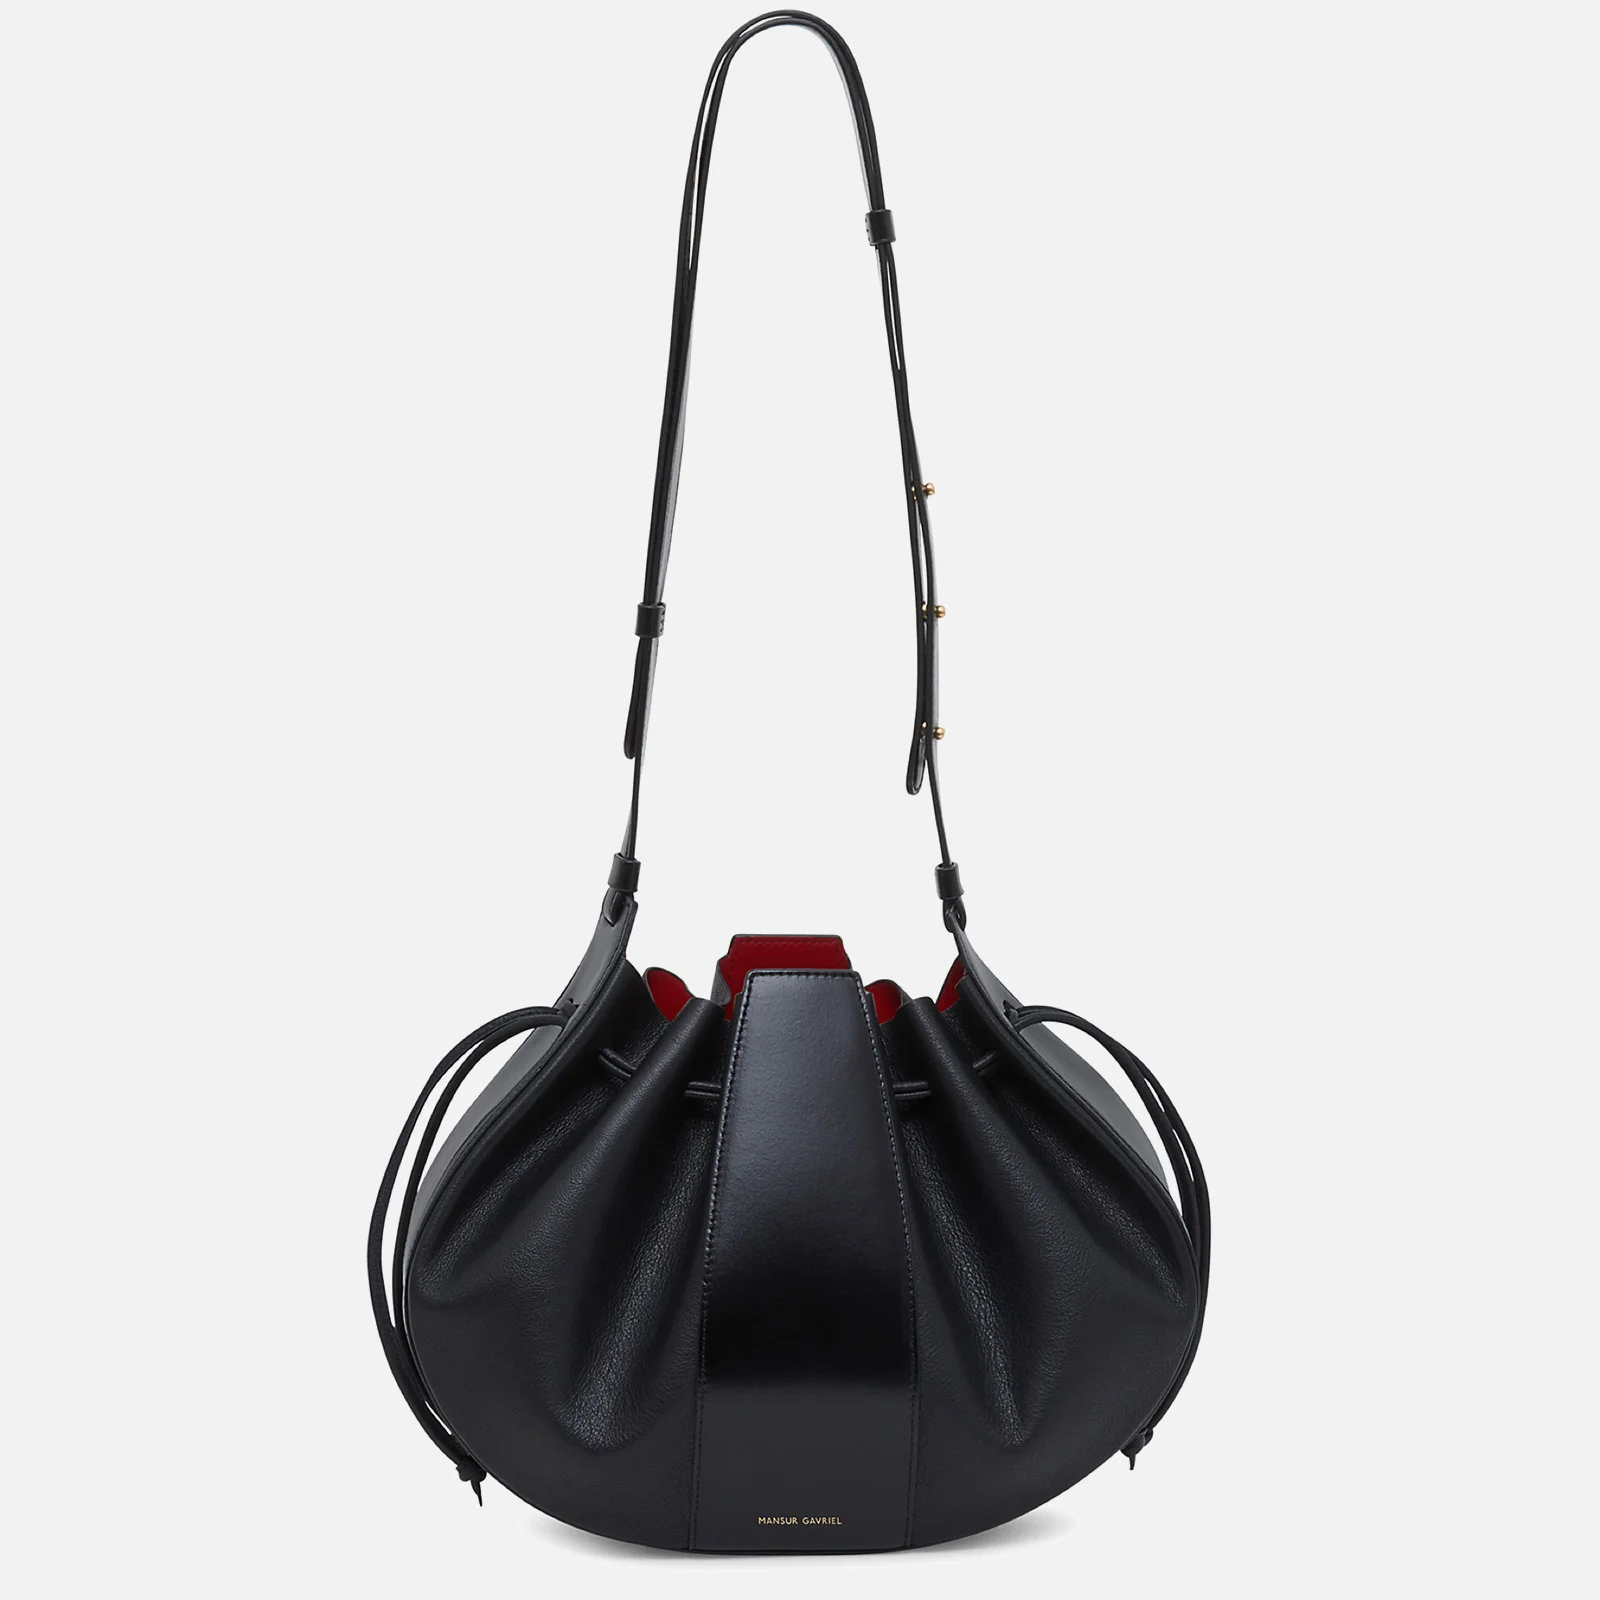 Mansur Gavriel Women's Lilium Bag - Black Image 1